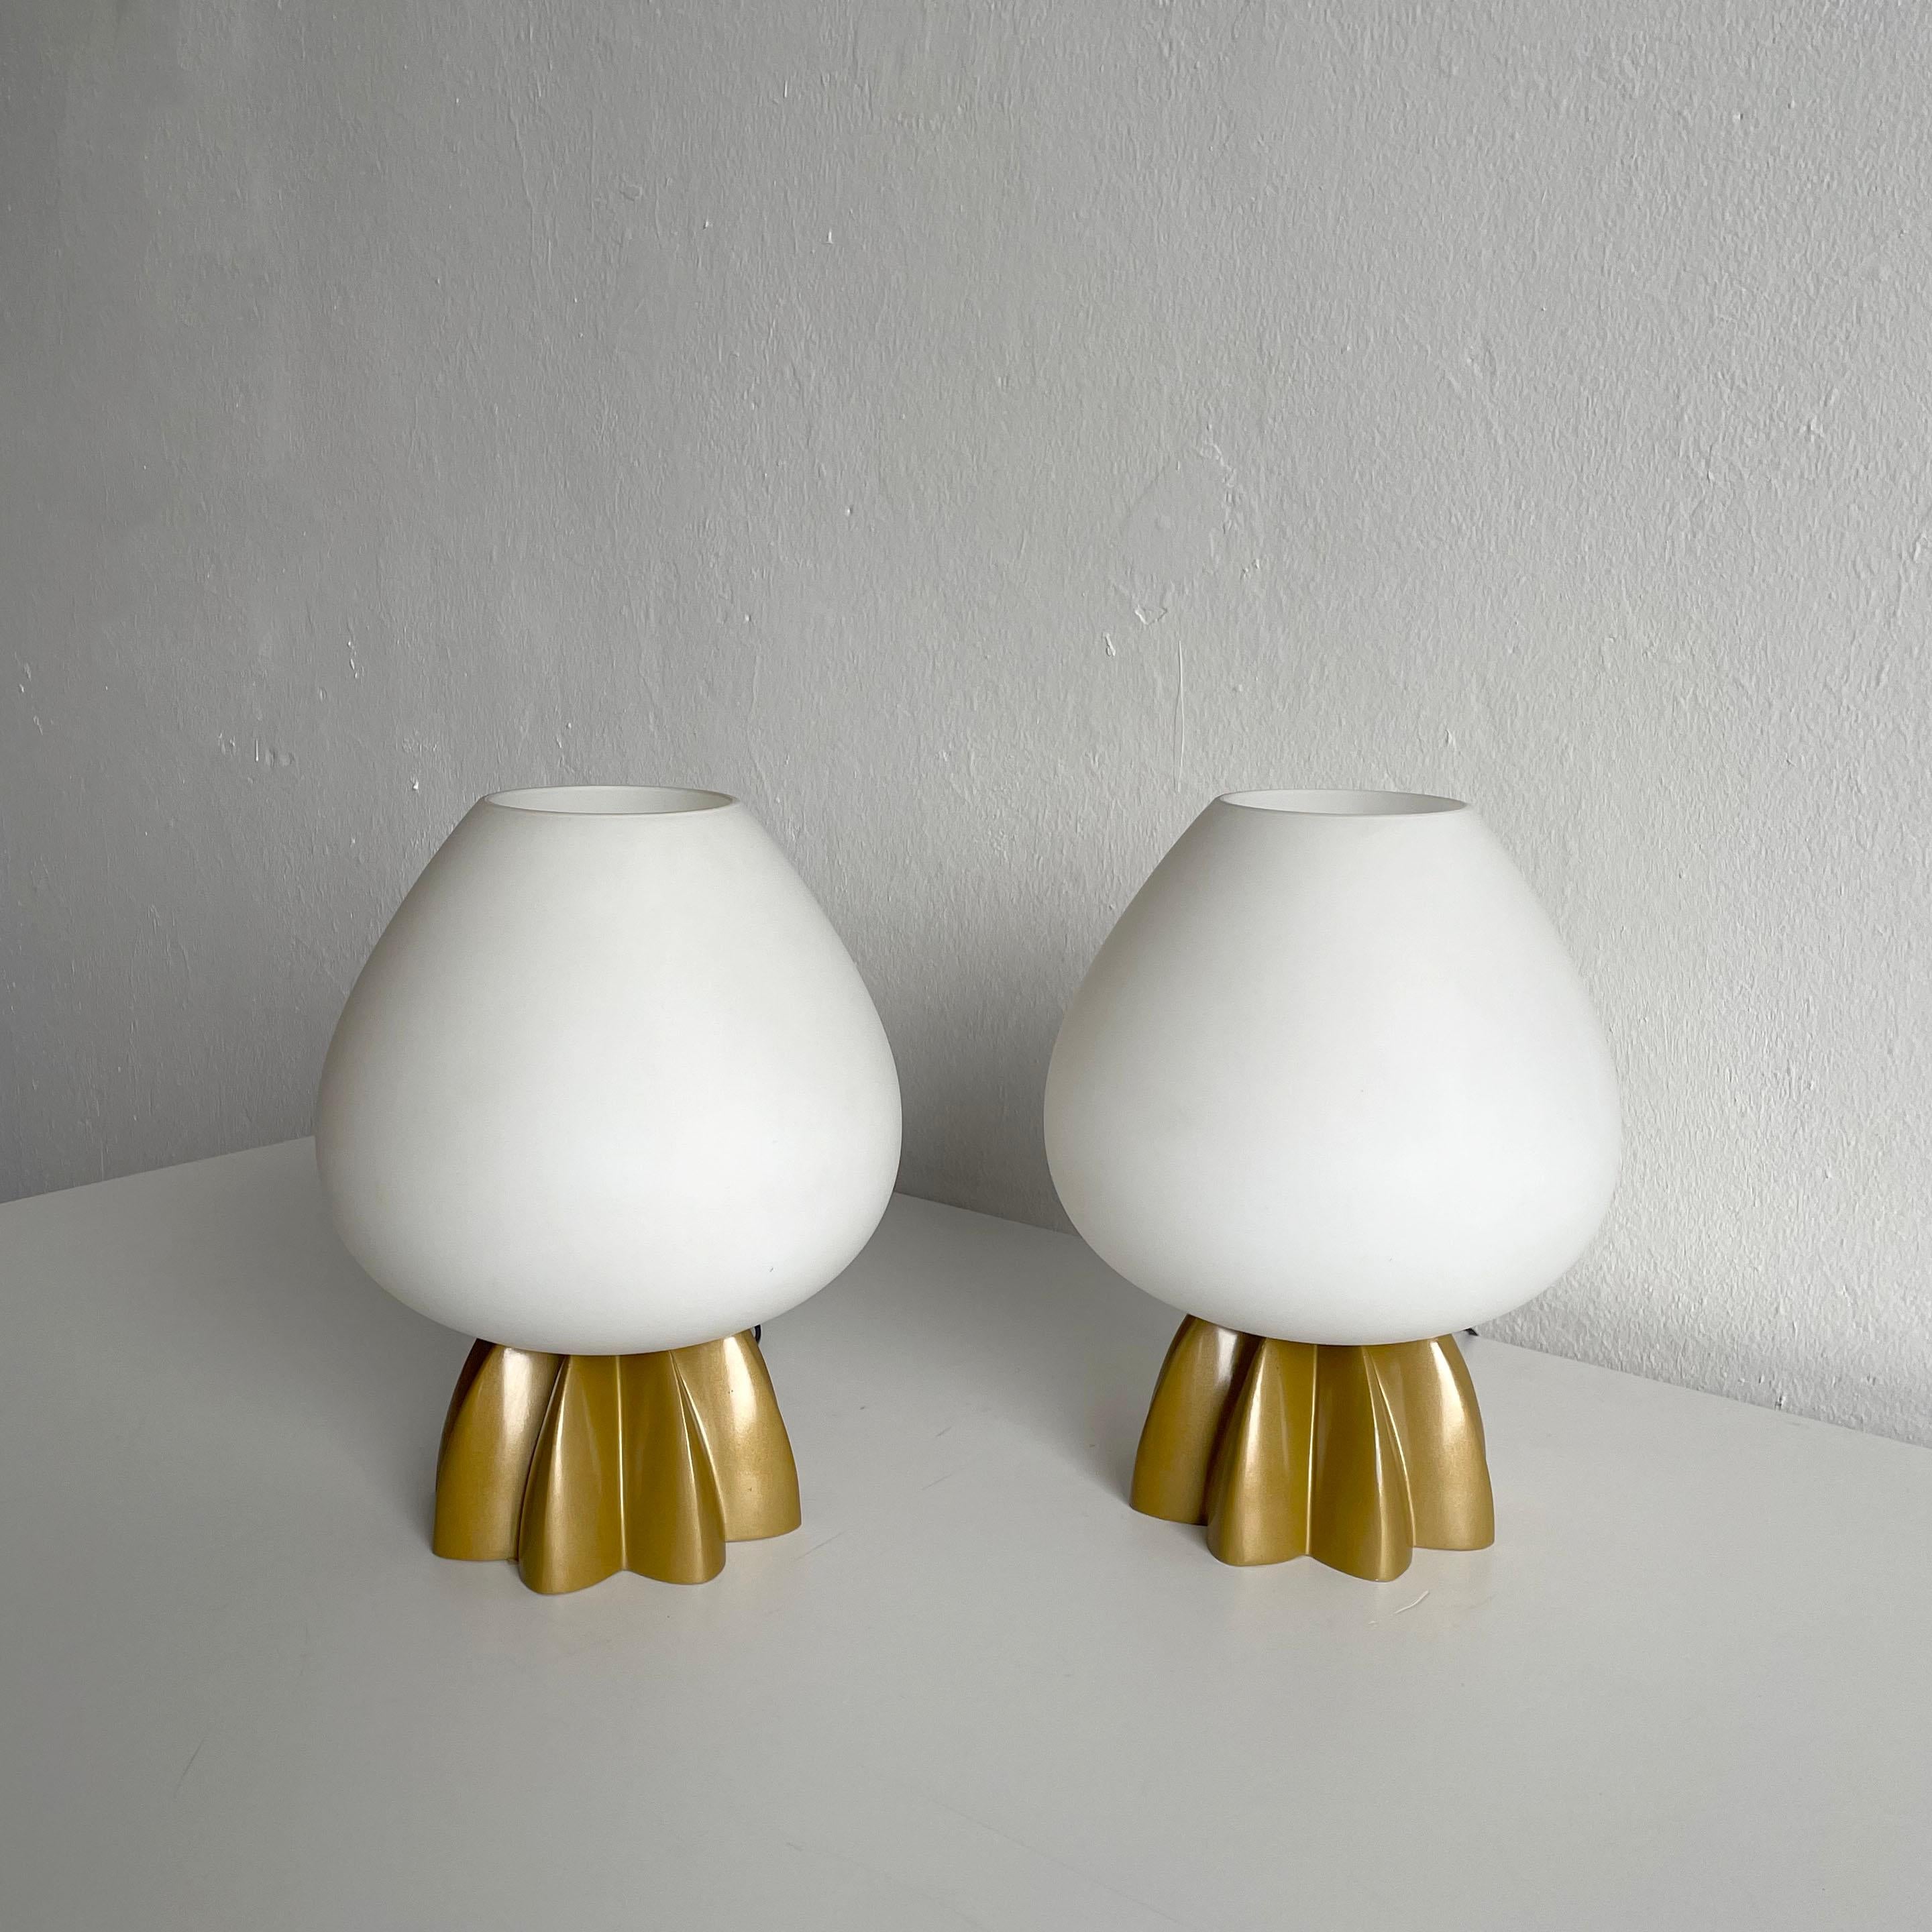 Ein Paar sehr seltene Tischlampen von Rodolfo Dordoni für die italienische Firma Foscarini mit Murano Vetri Lampenschirmen. 
Der Name dieses seltenen Modells der Lampen ist '' Fruits Tavolo ''.

Beide Lampen sind in gutem Vintage-Zustand. Die